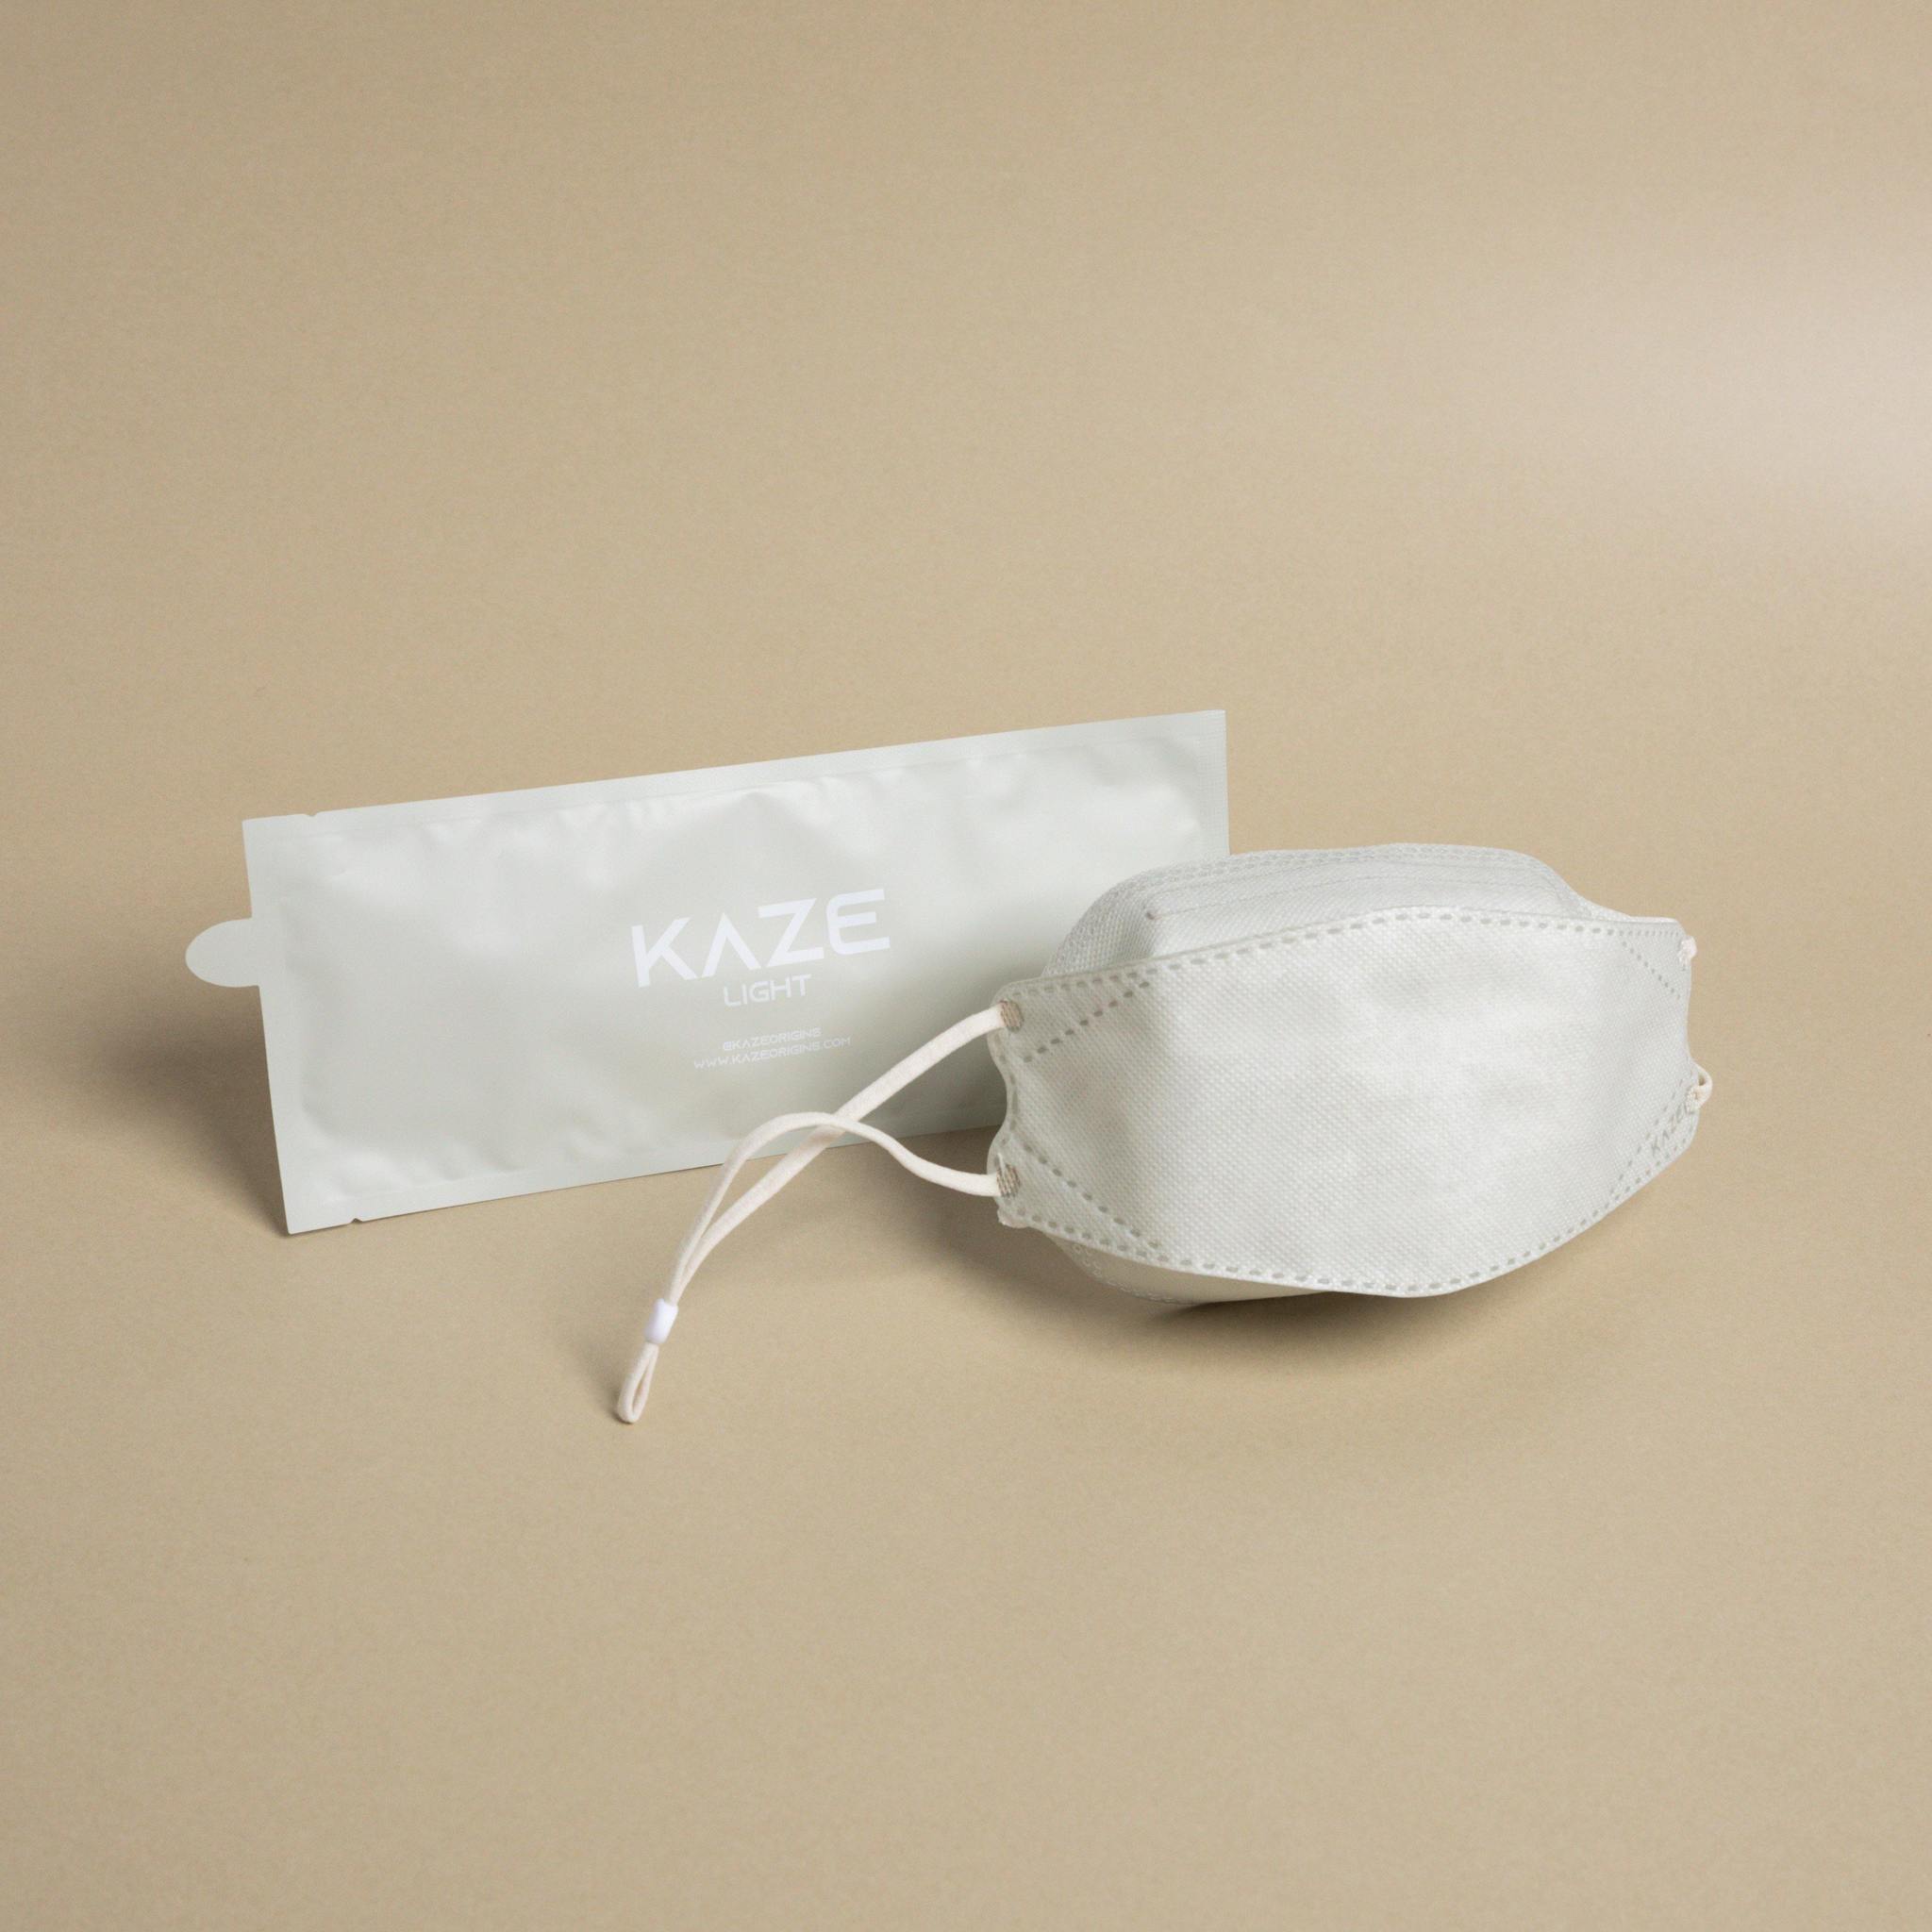 KAZE Masks - Light Element Series